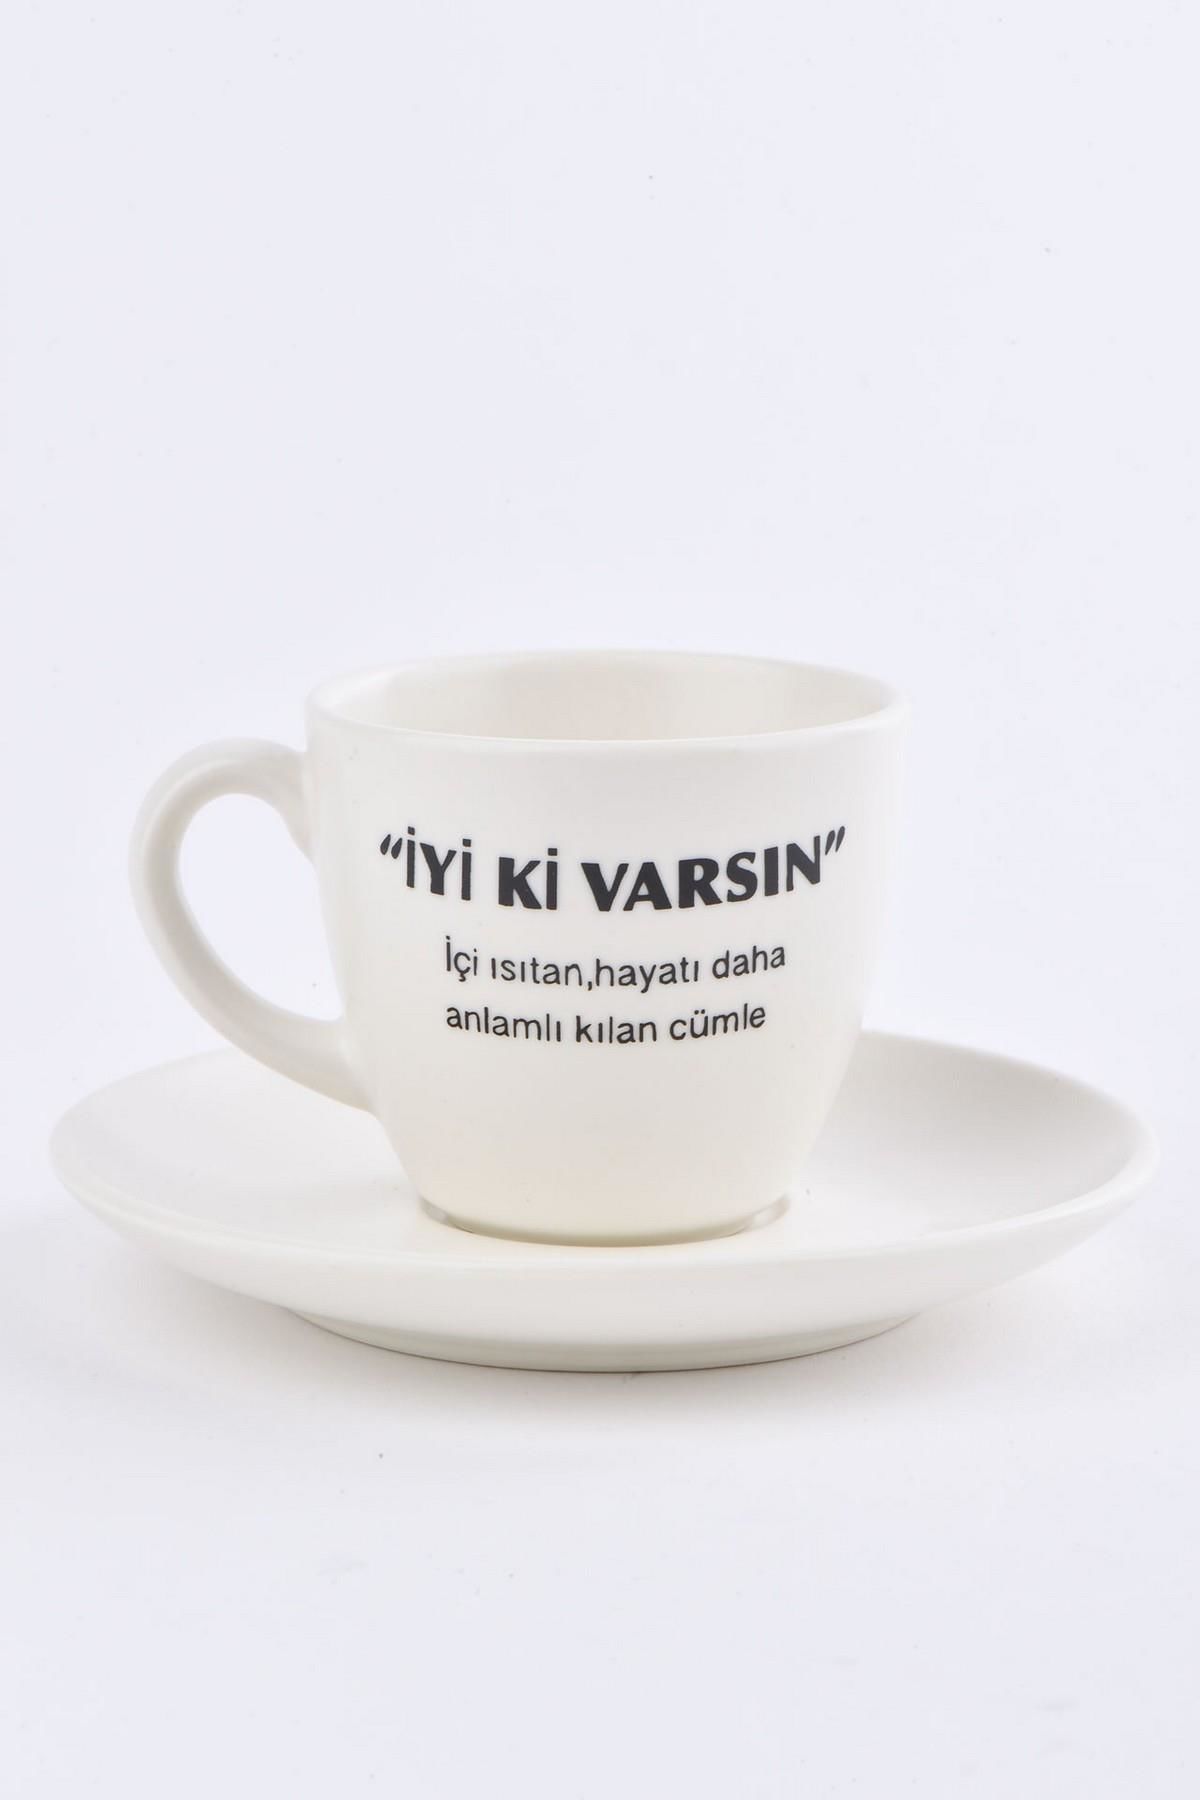 Soobepark 'İyi ki Varsın' Yazılı Hediyelik Türk Kahve Fincan Takımı Krem